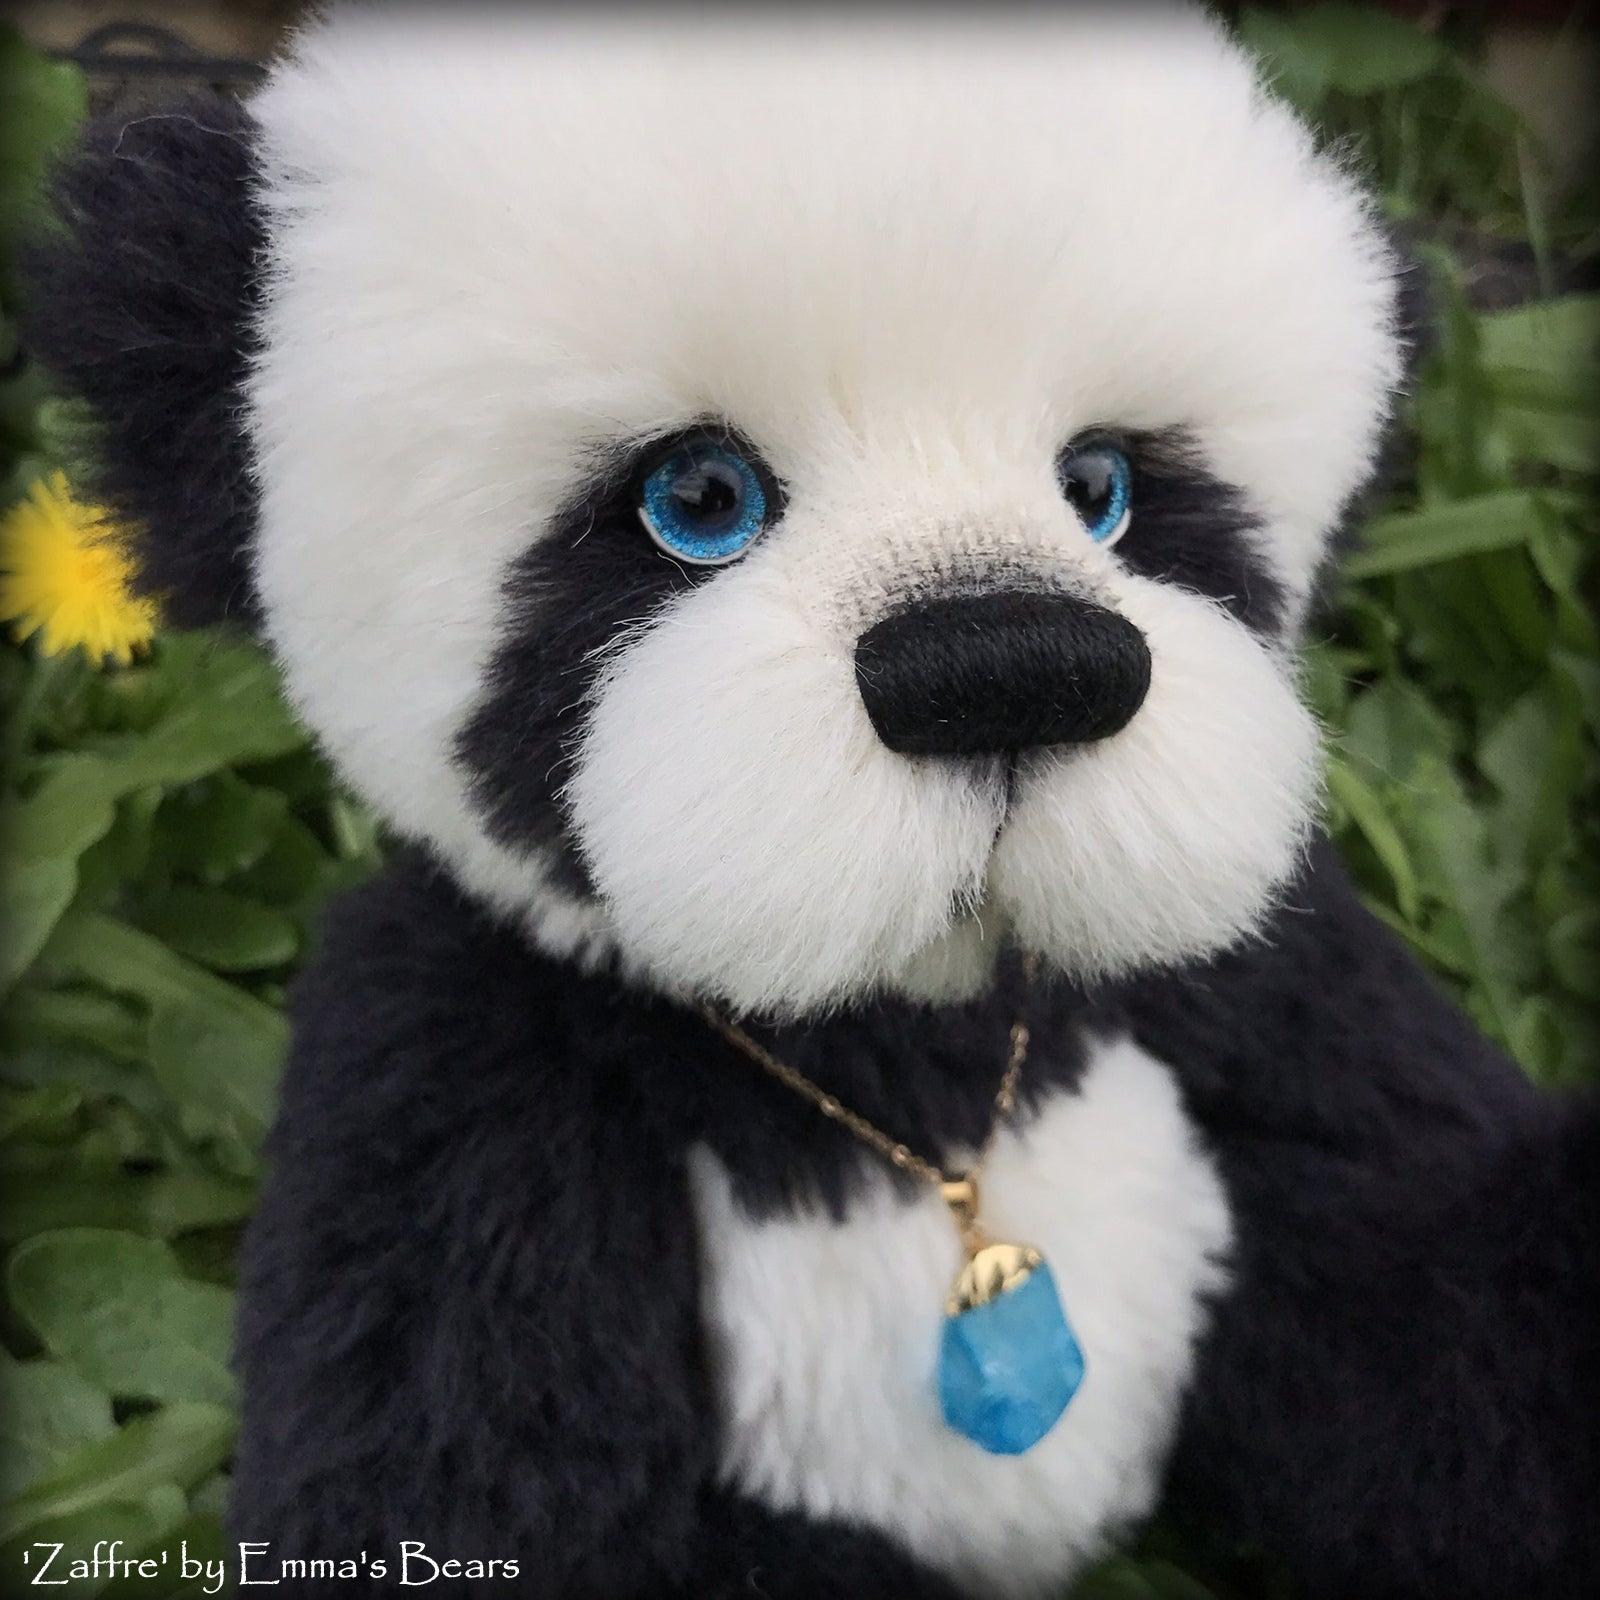 Zaffre - 14" alpaca Artist Panda Bear by Emma's Bears - OOAK